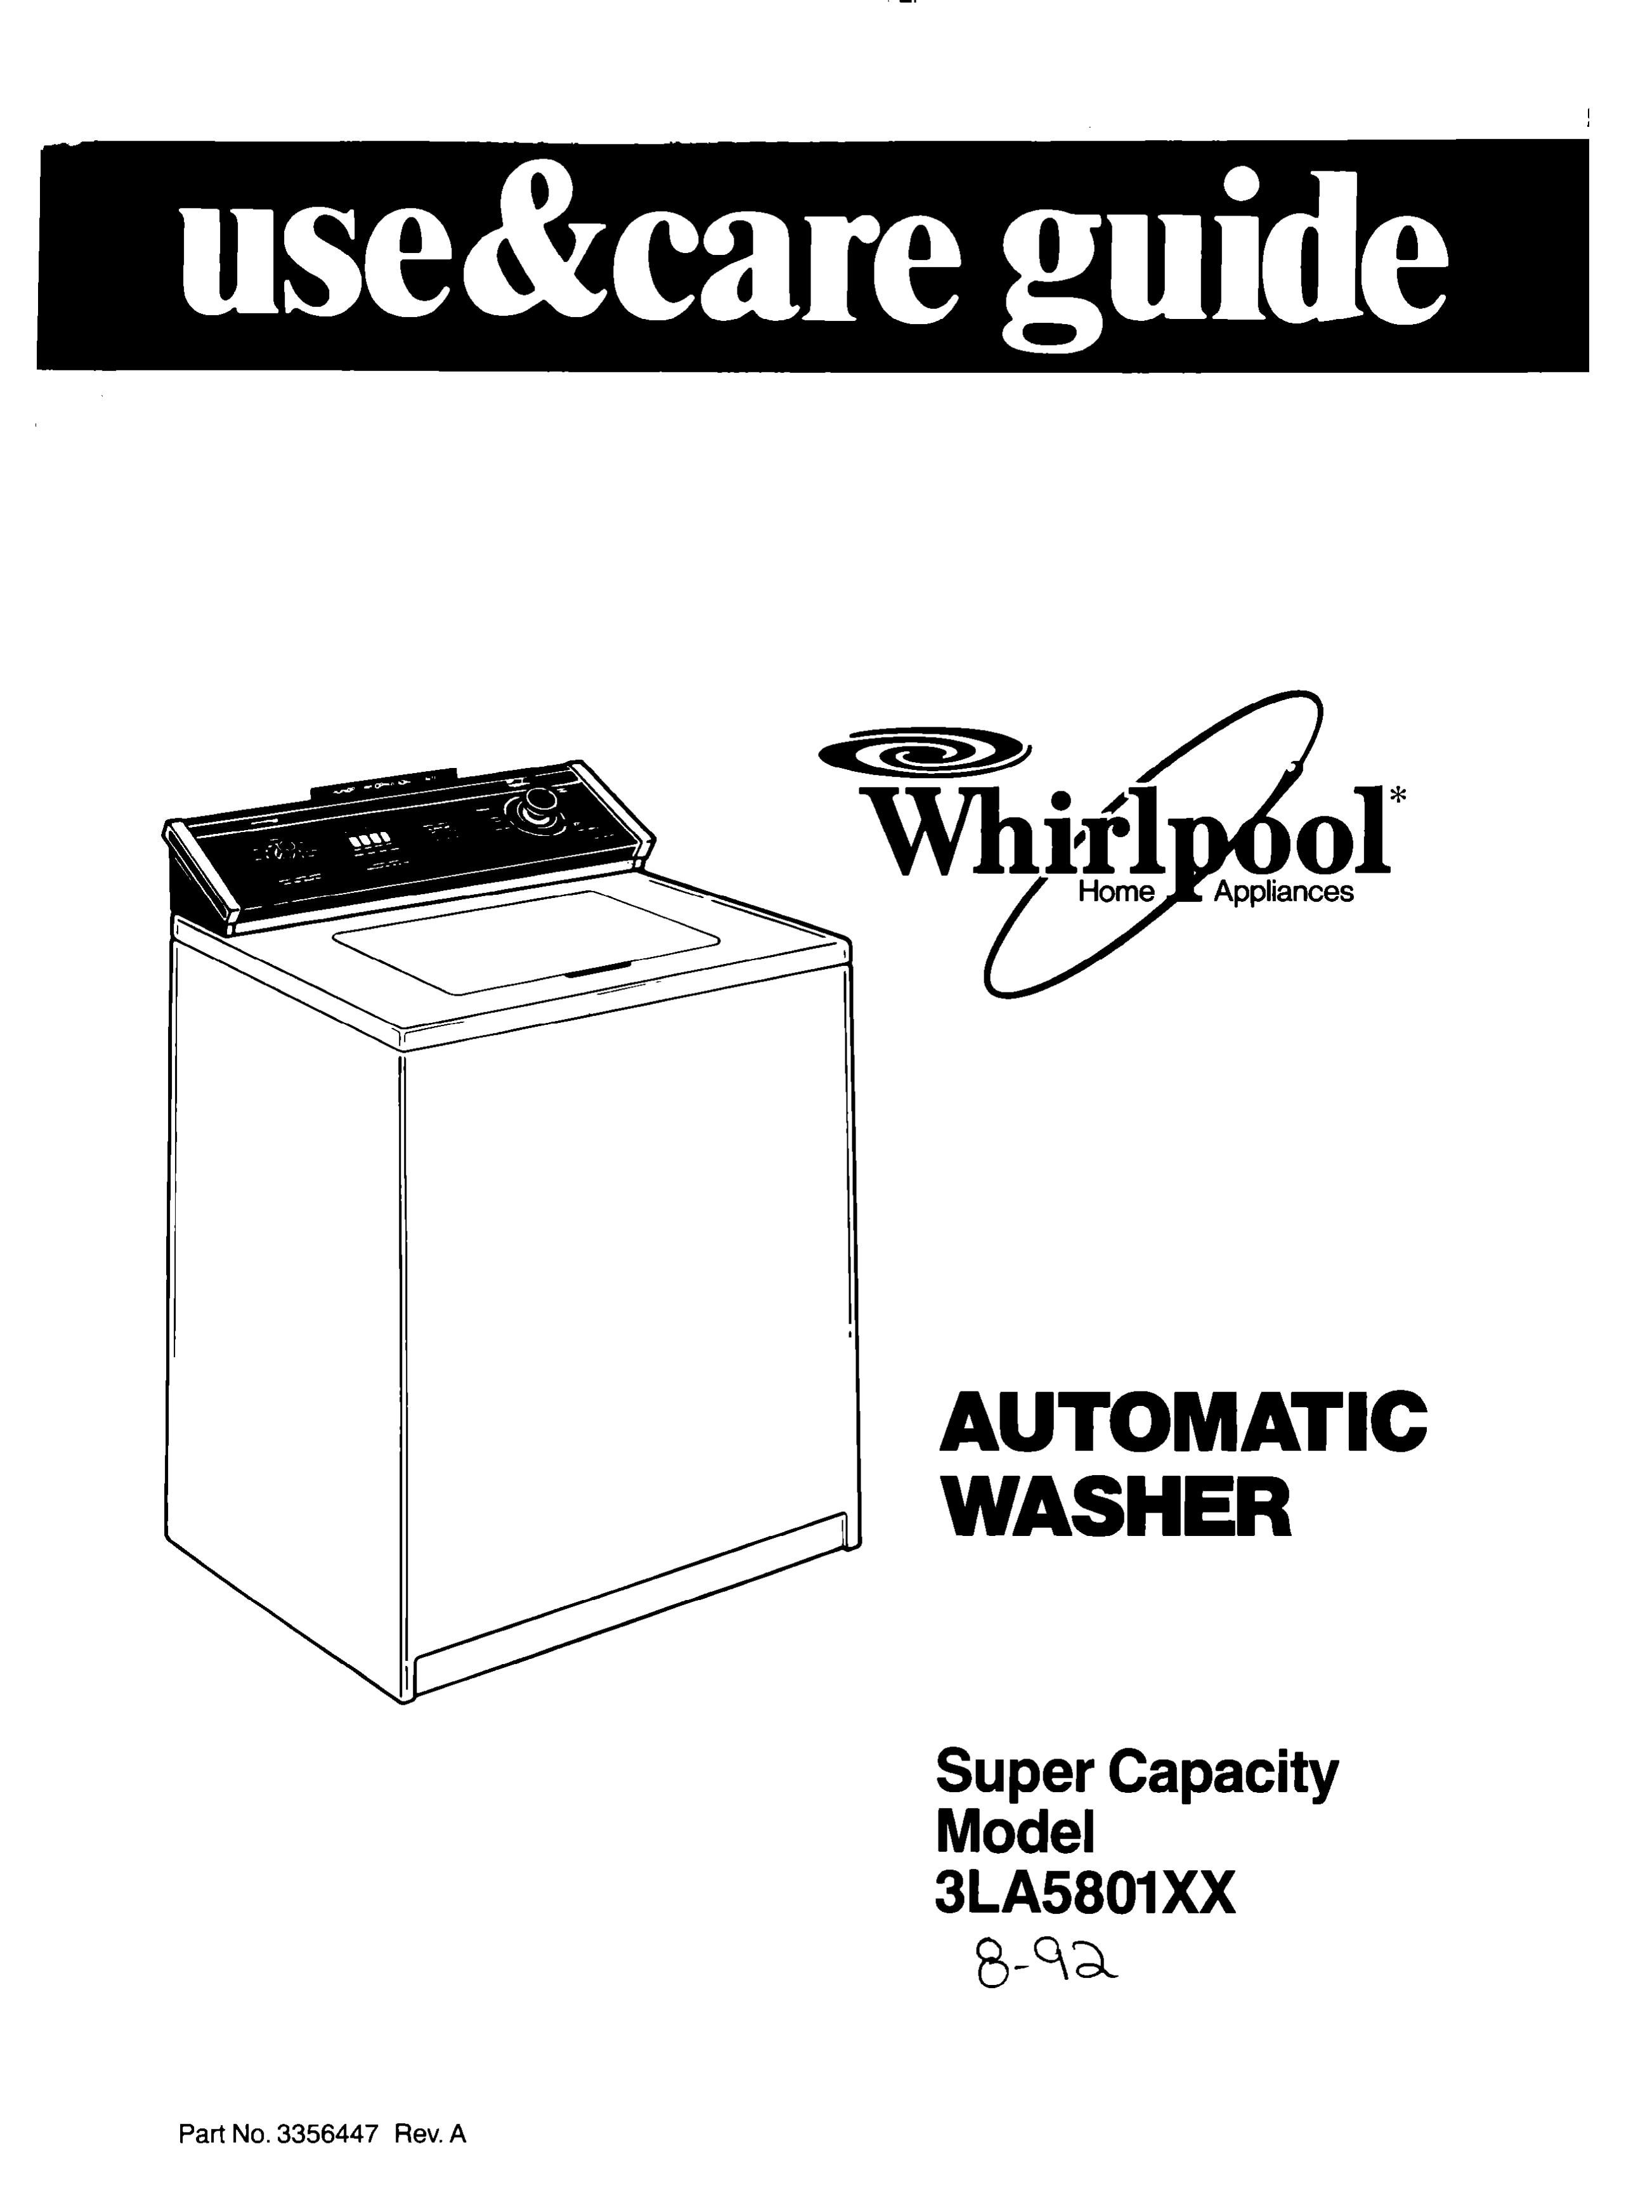 Whirlpool 3LA5801XX Washer User Manual